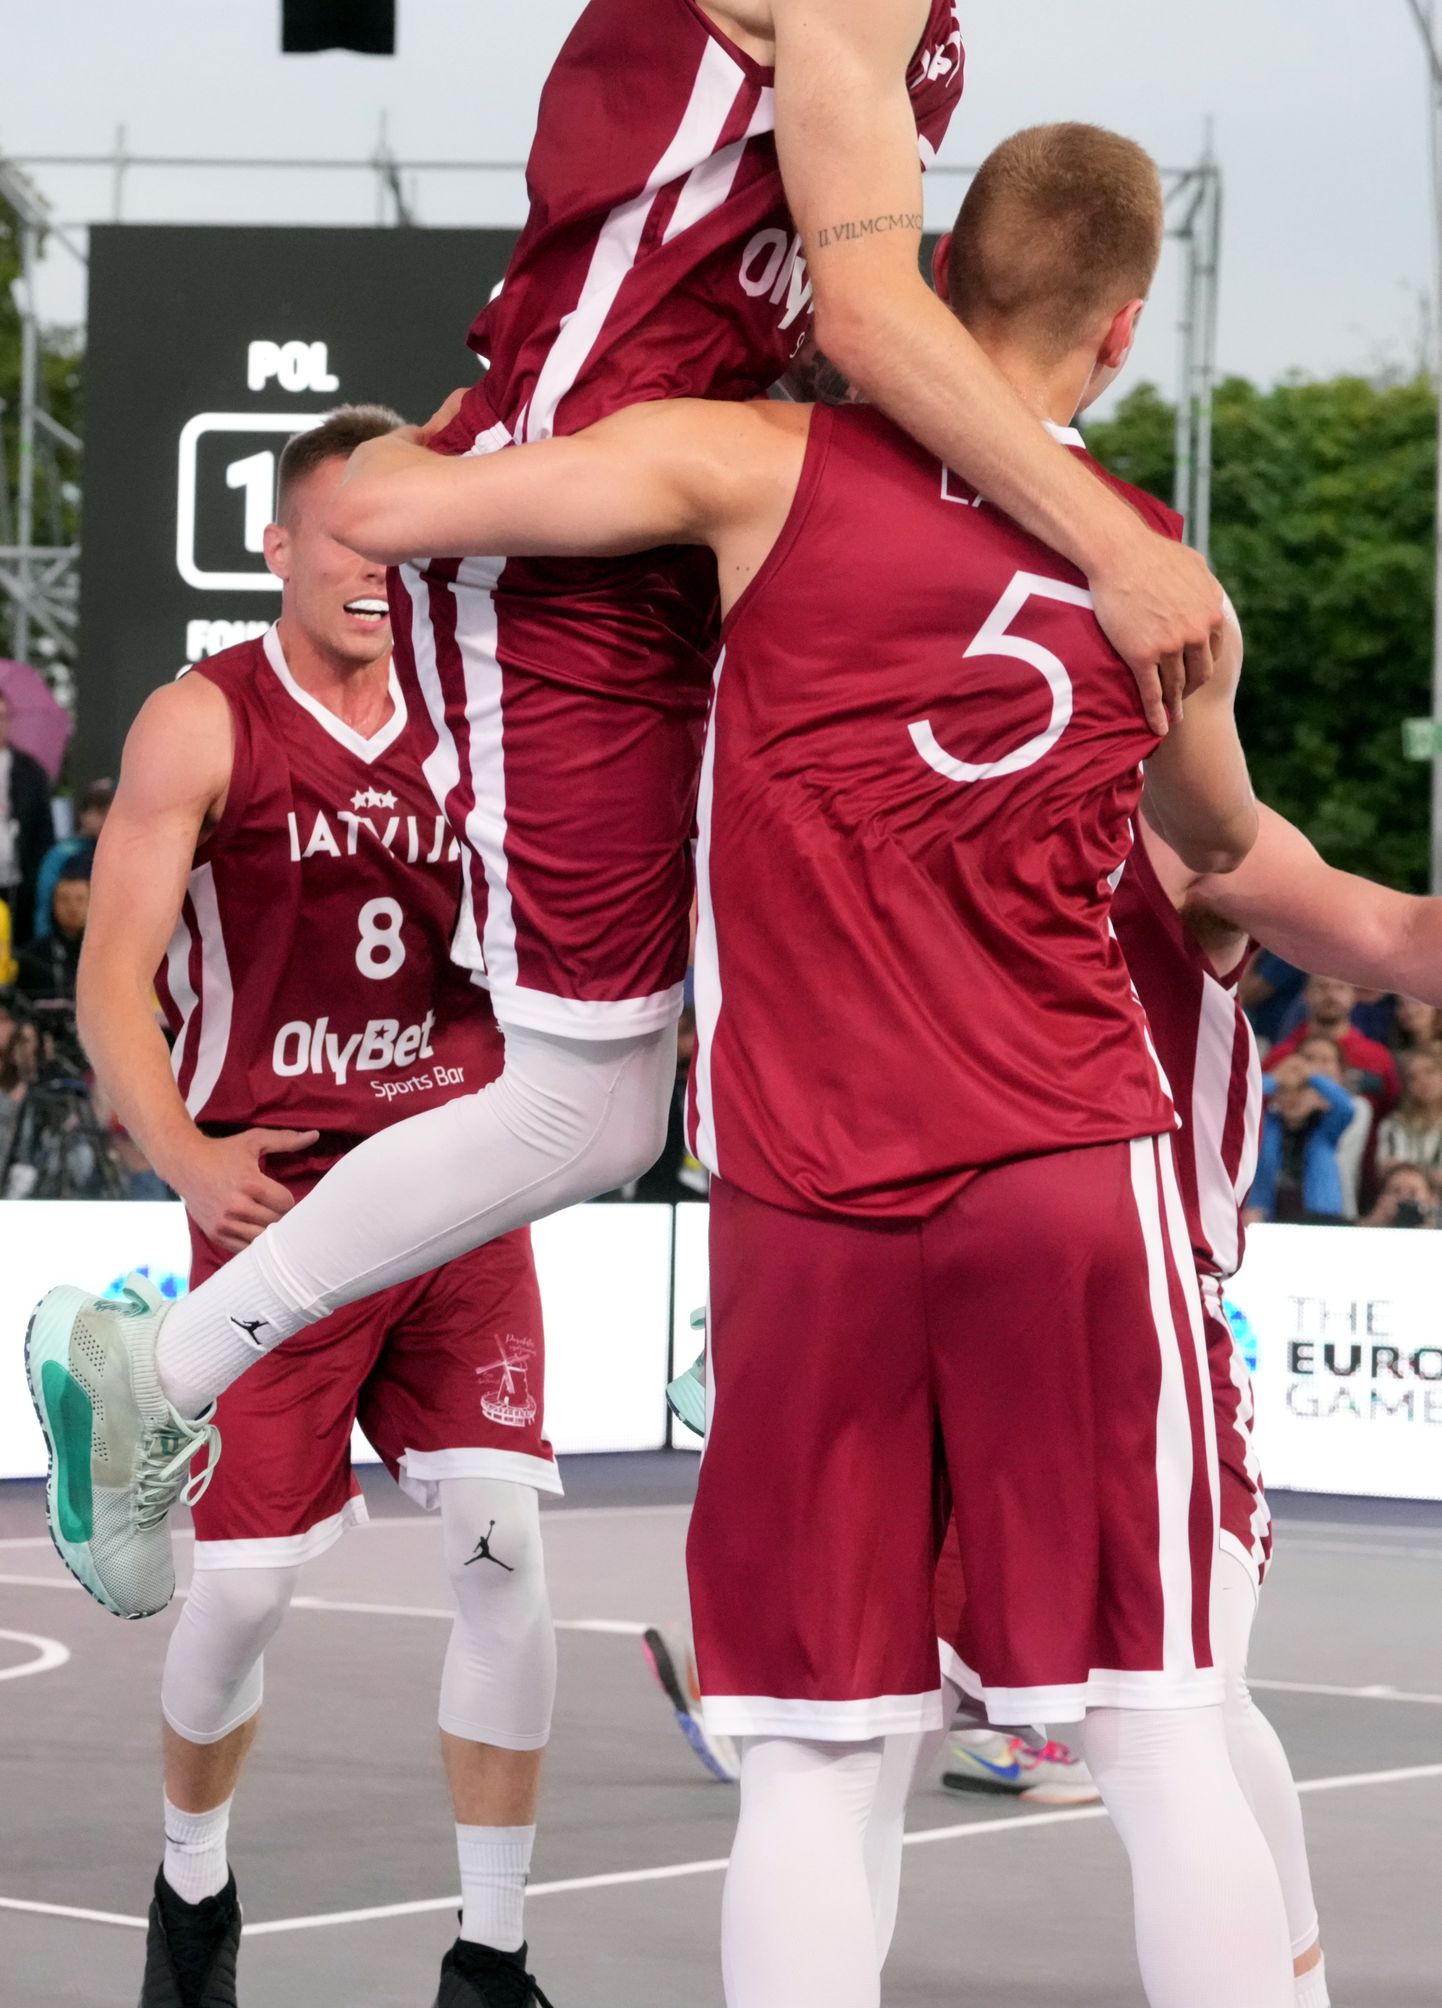 3x3 vīriešu basketbola turnīra spēle starp Latvijas un Polijas izlasēm III Eiropas spēlēs Krakovā.